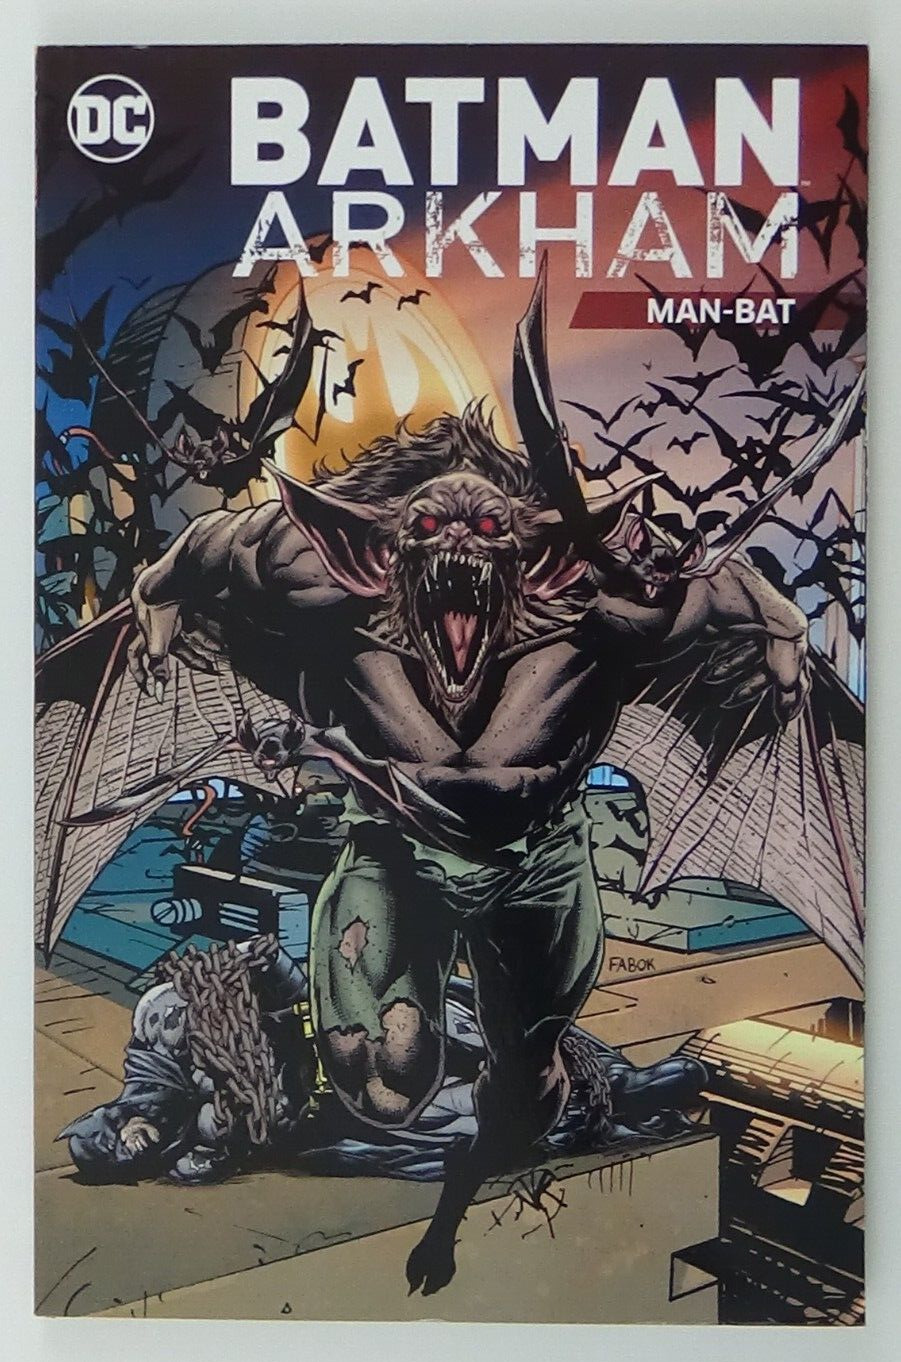 Batman Arkham: Man-Bat (DC Comics March 2017) #015